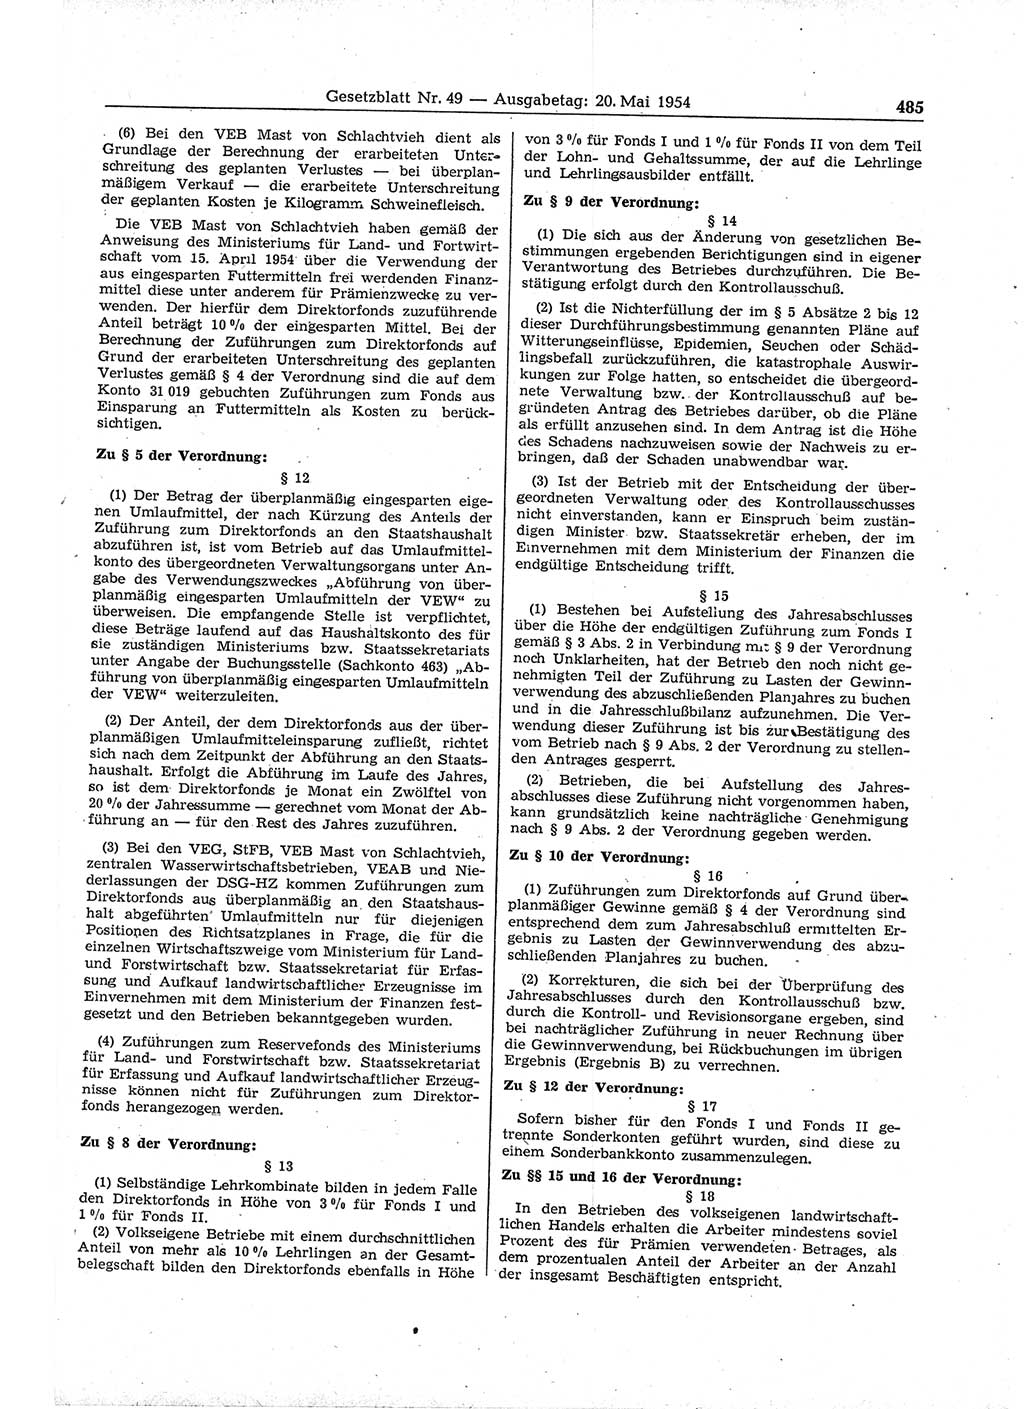 Gesetzblatt (GBl.) der Deutschen Demokratischen Republik (DDR) 1954, Seite 485 (GBl. DDR 1954, S. 485)